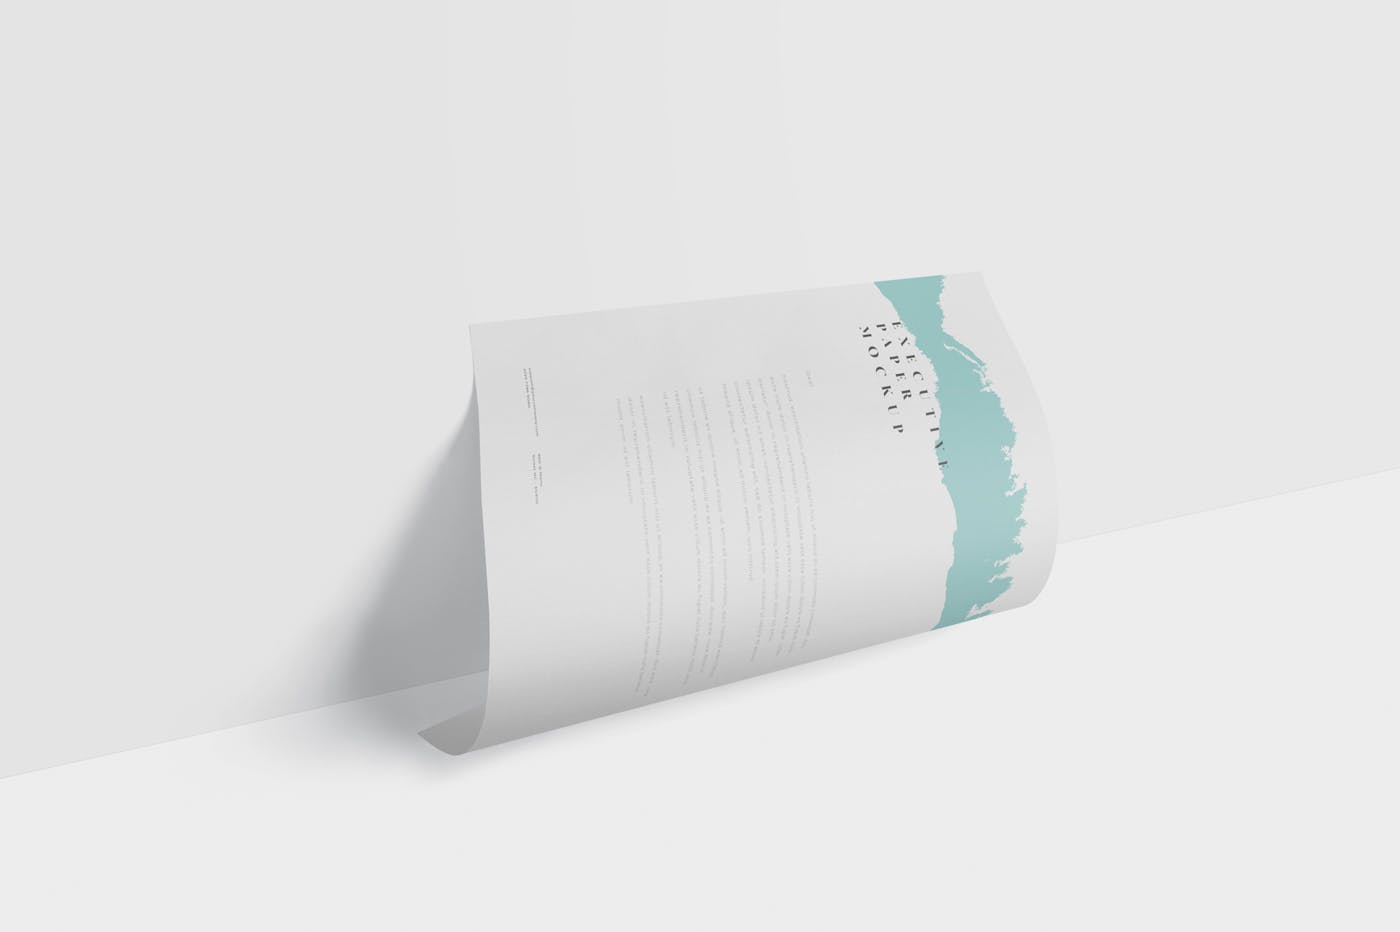 企业宣传单张设计效果图样机16图库精选 Executive Paper Mockup – 7×10 Inch Size插图(4)